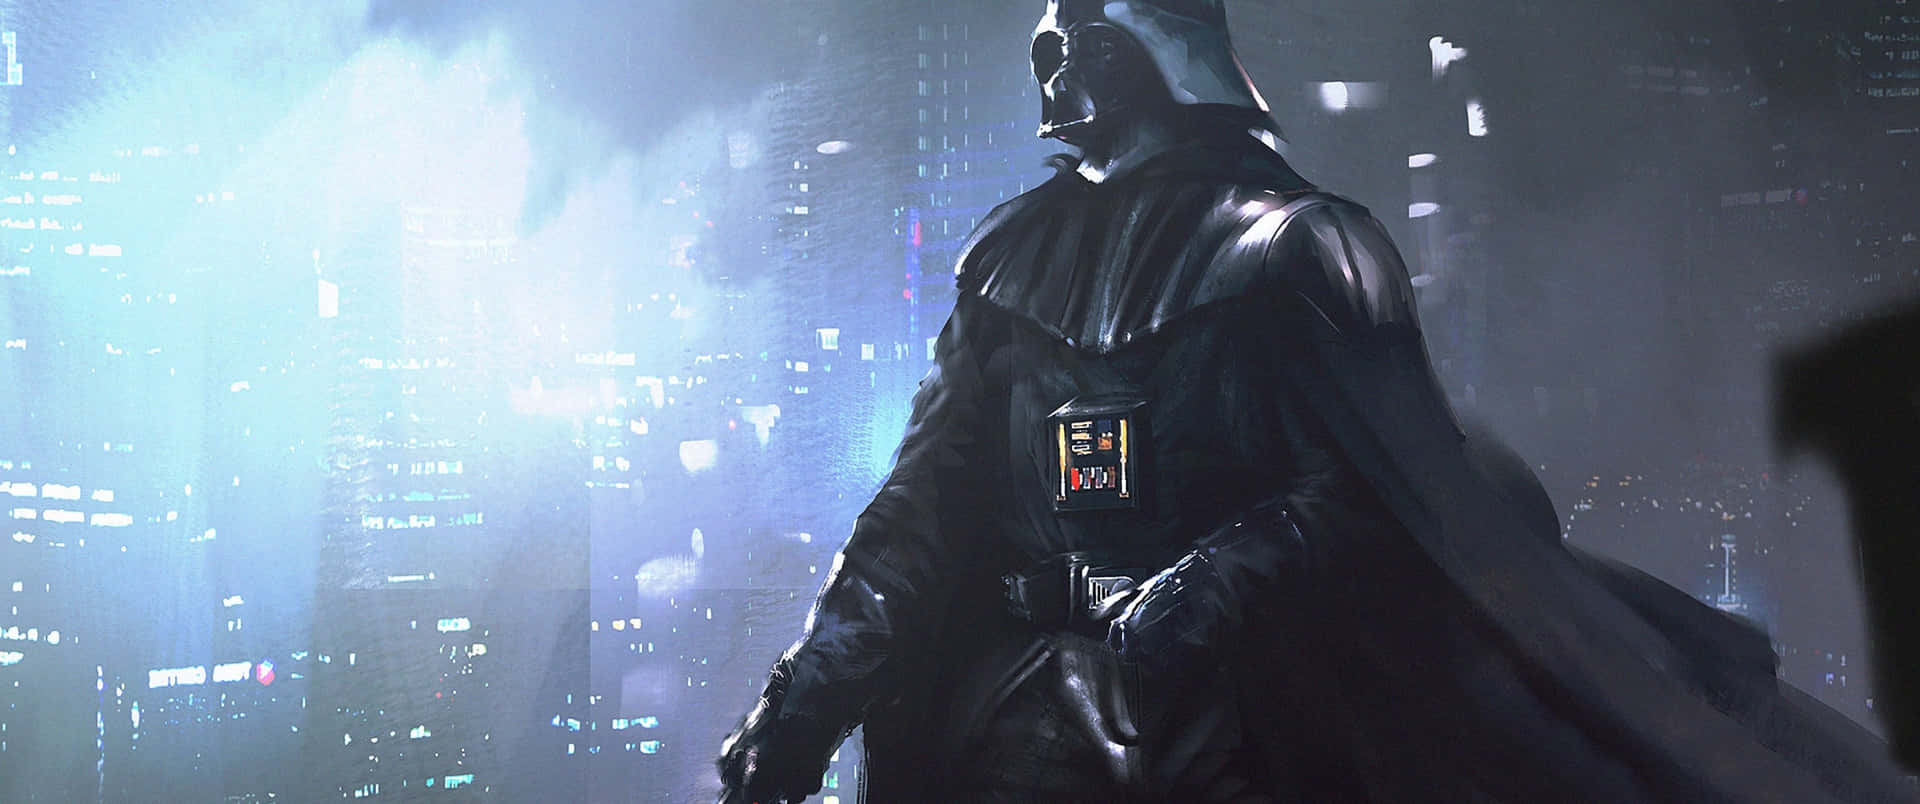 Darth Vader Star Wars 3440x1440 Wallpaper